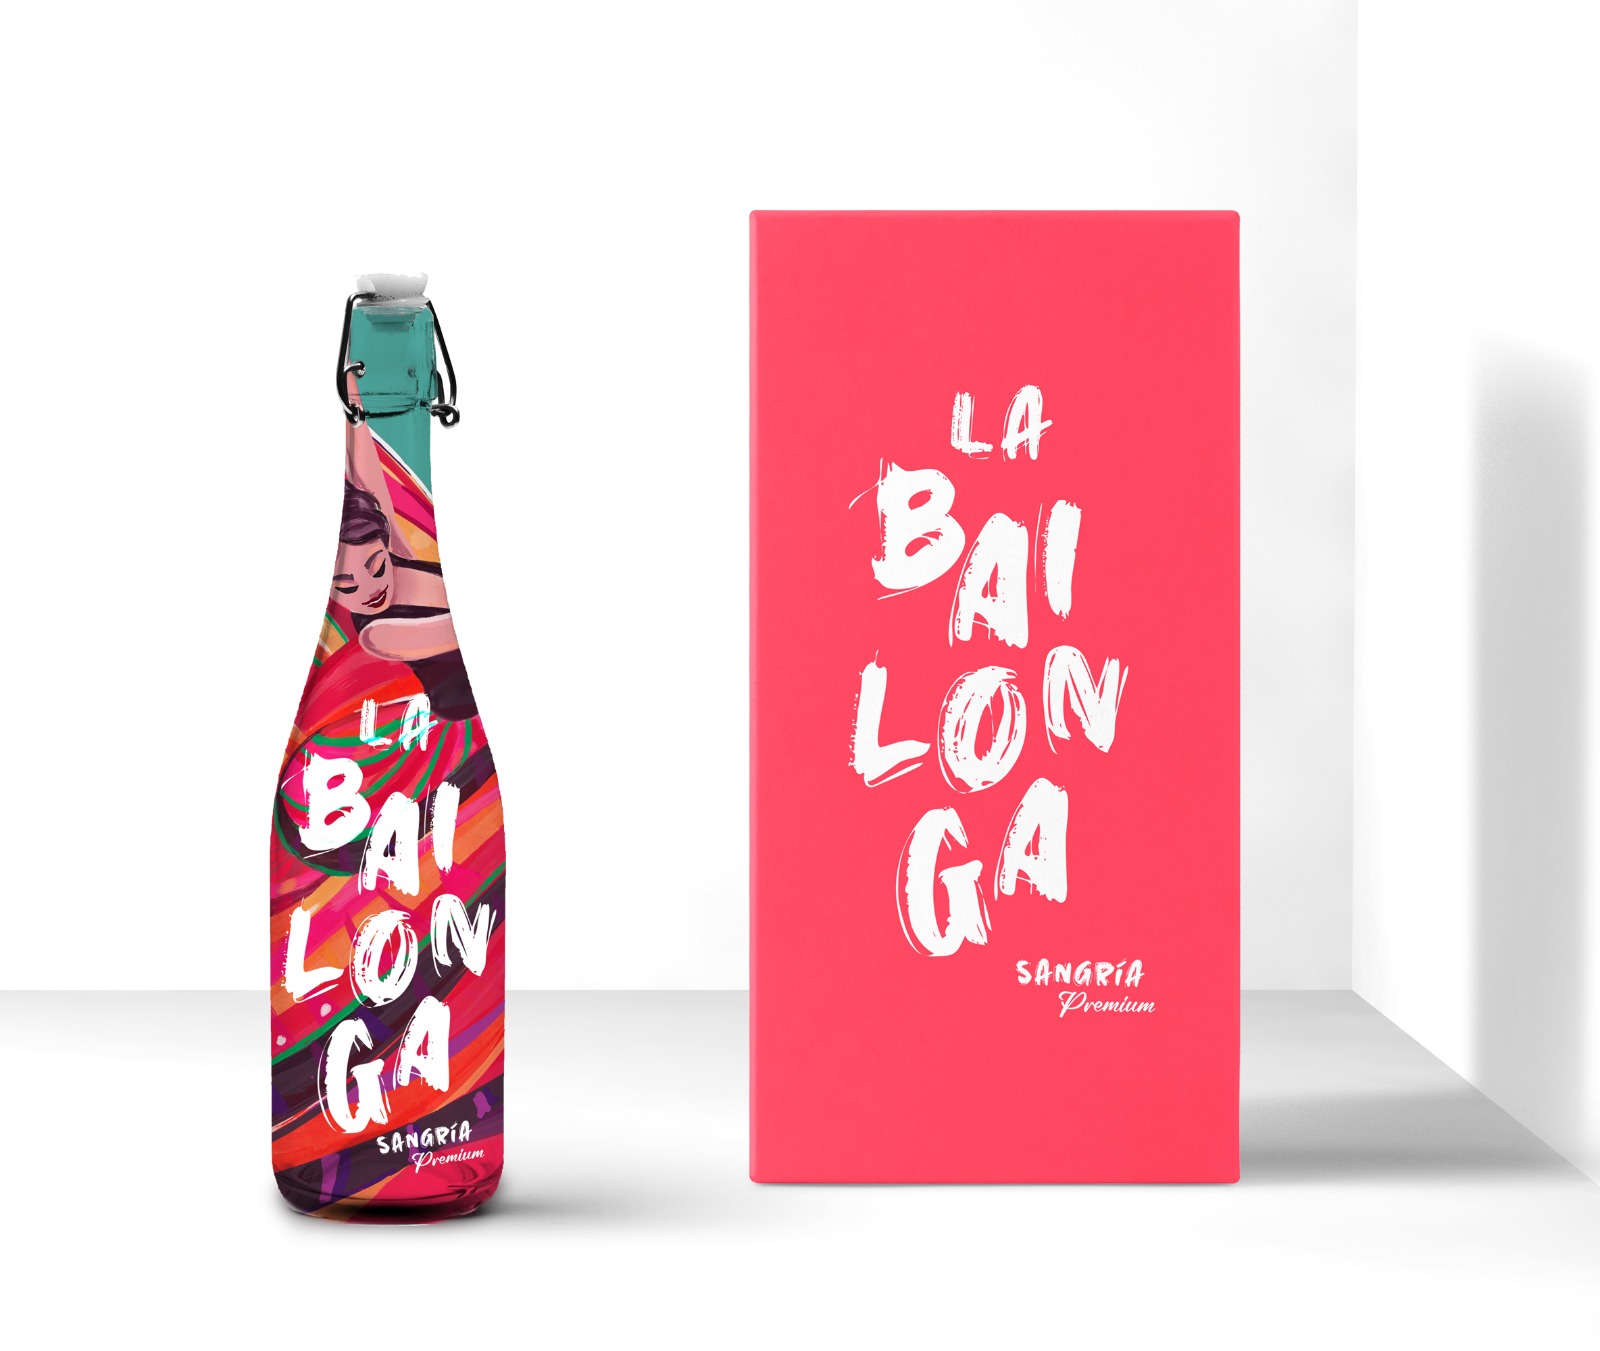 Nace “La Bailonga”, nueva sangría Premium en botella reutilizable de imagen divertida, de cooperativa El Progreso 